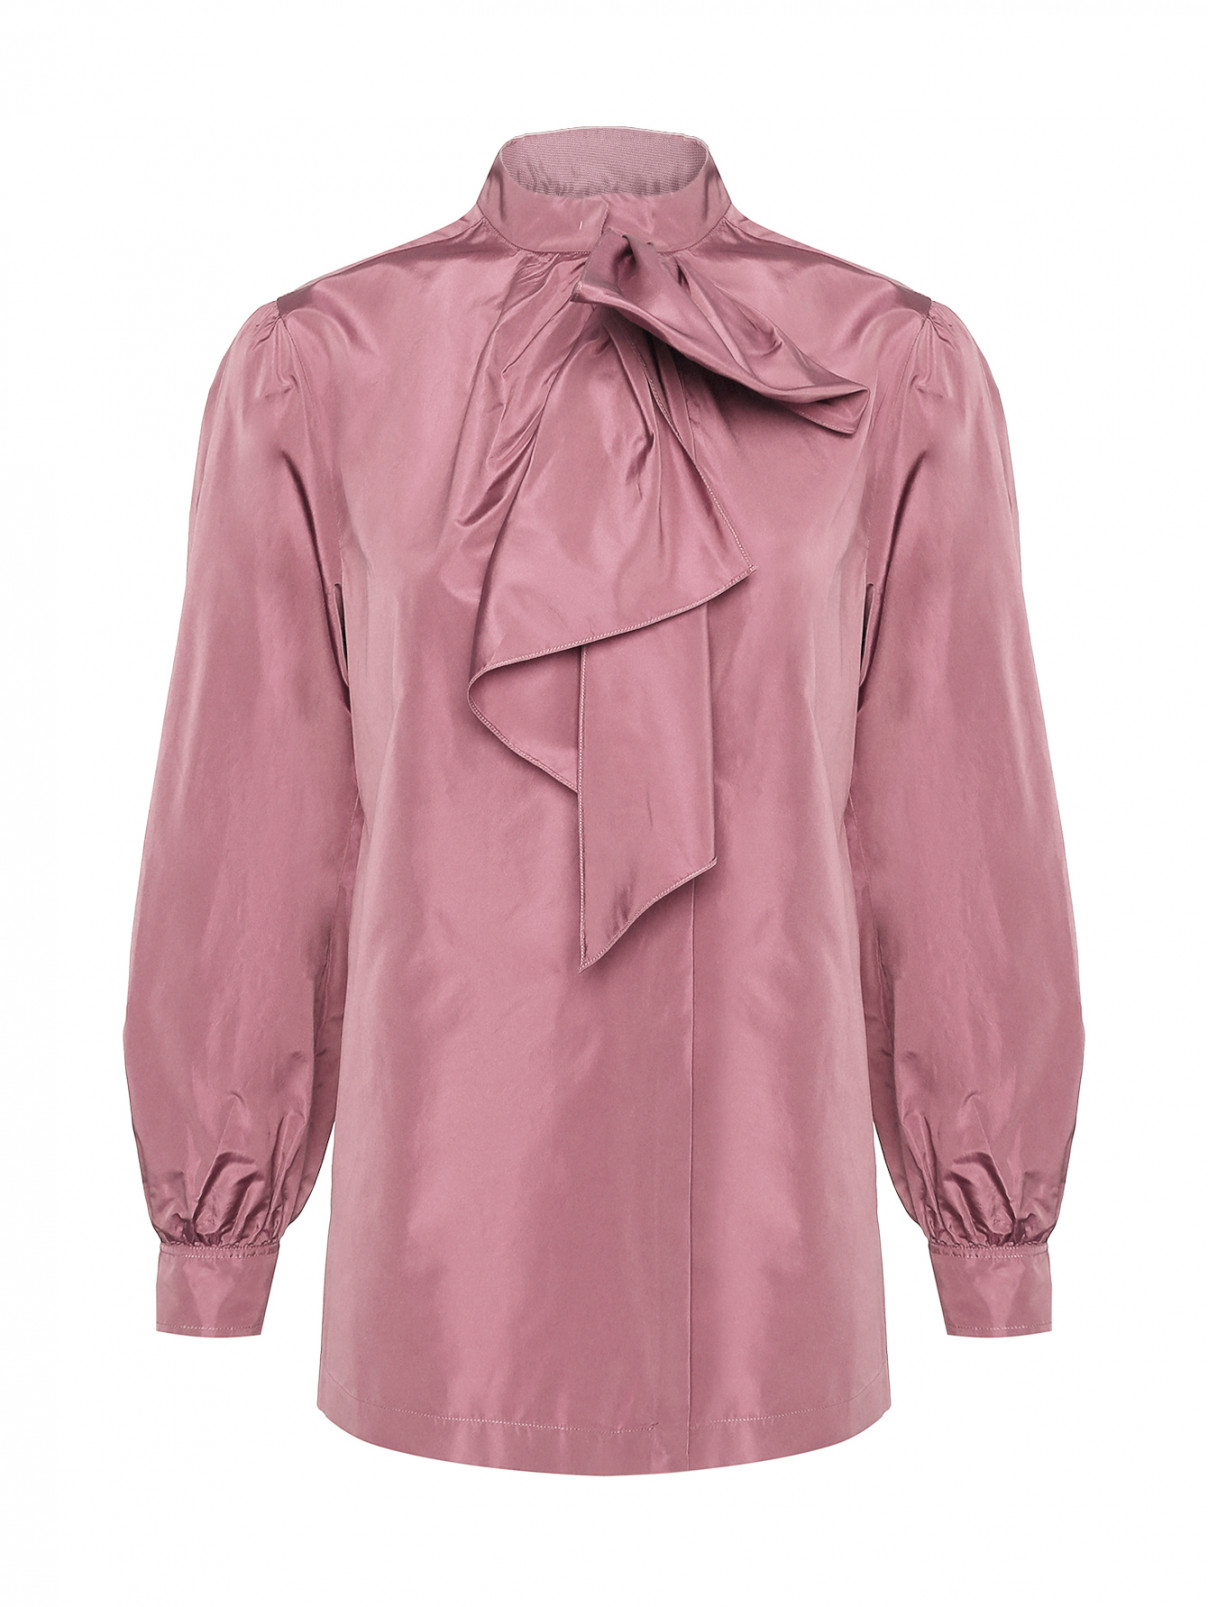 Однотонная блуза с бантом Alberta Ferretti  –  Общий вид  – Цвет:  Розовый